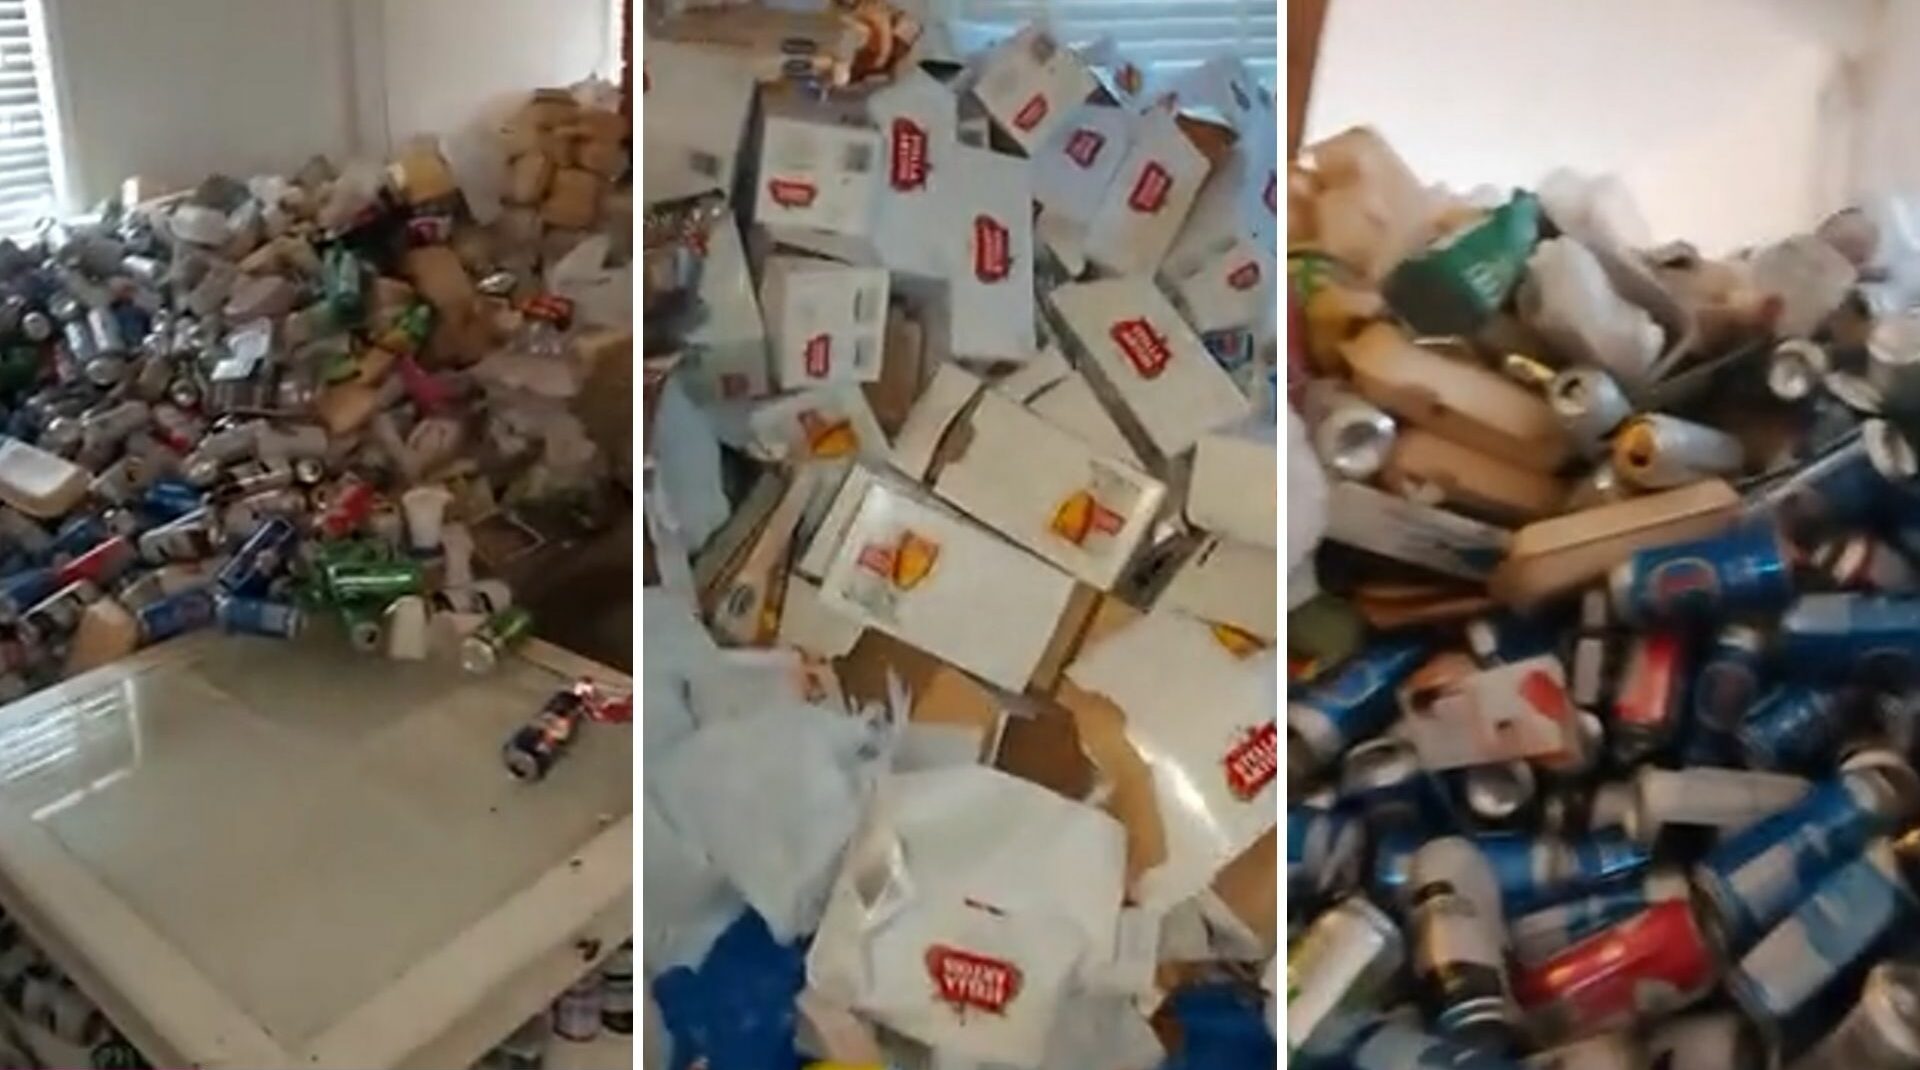 Inquilino despejado deixa 8 mil latas de cerveja vazias em apartamento